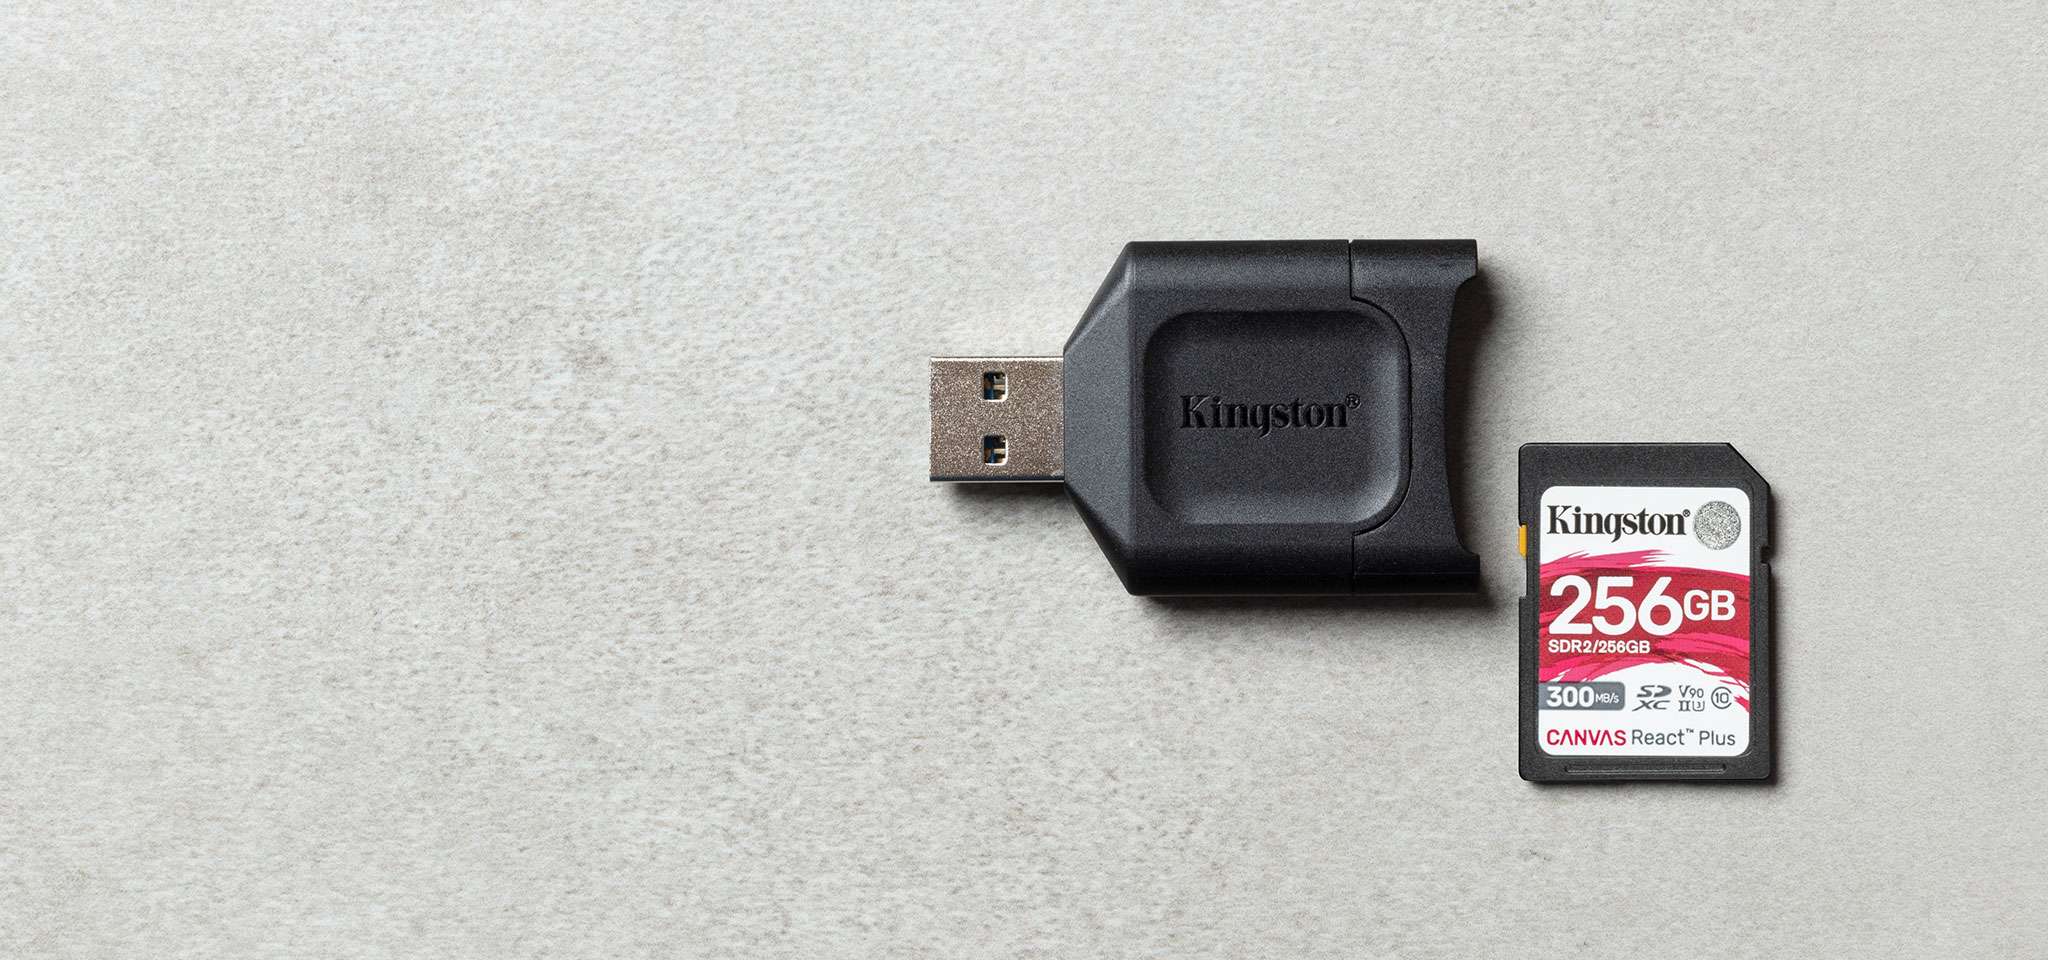 Un lecteur de carte SD MobileLite Plus placé à côté d’une carte SD Canvas React Plus sur une surface grise